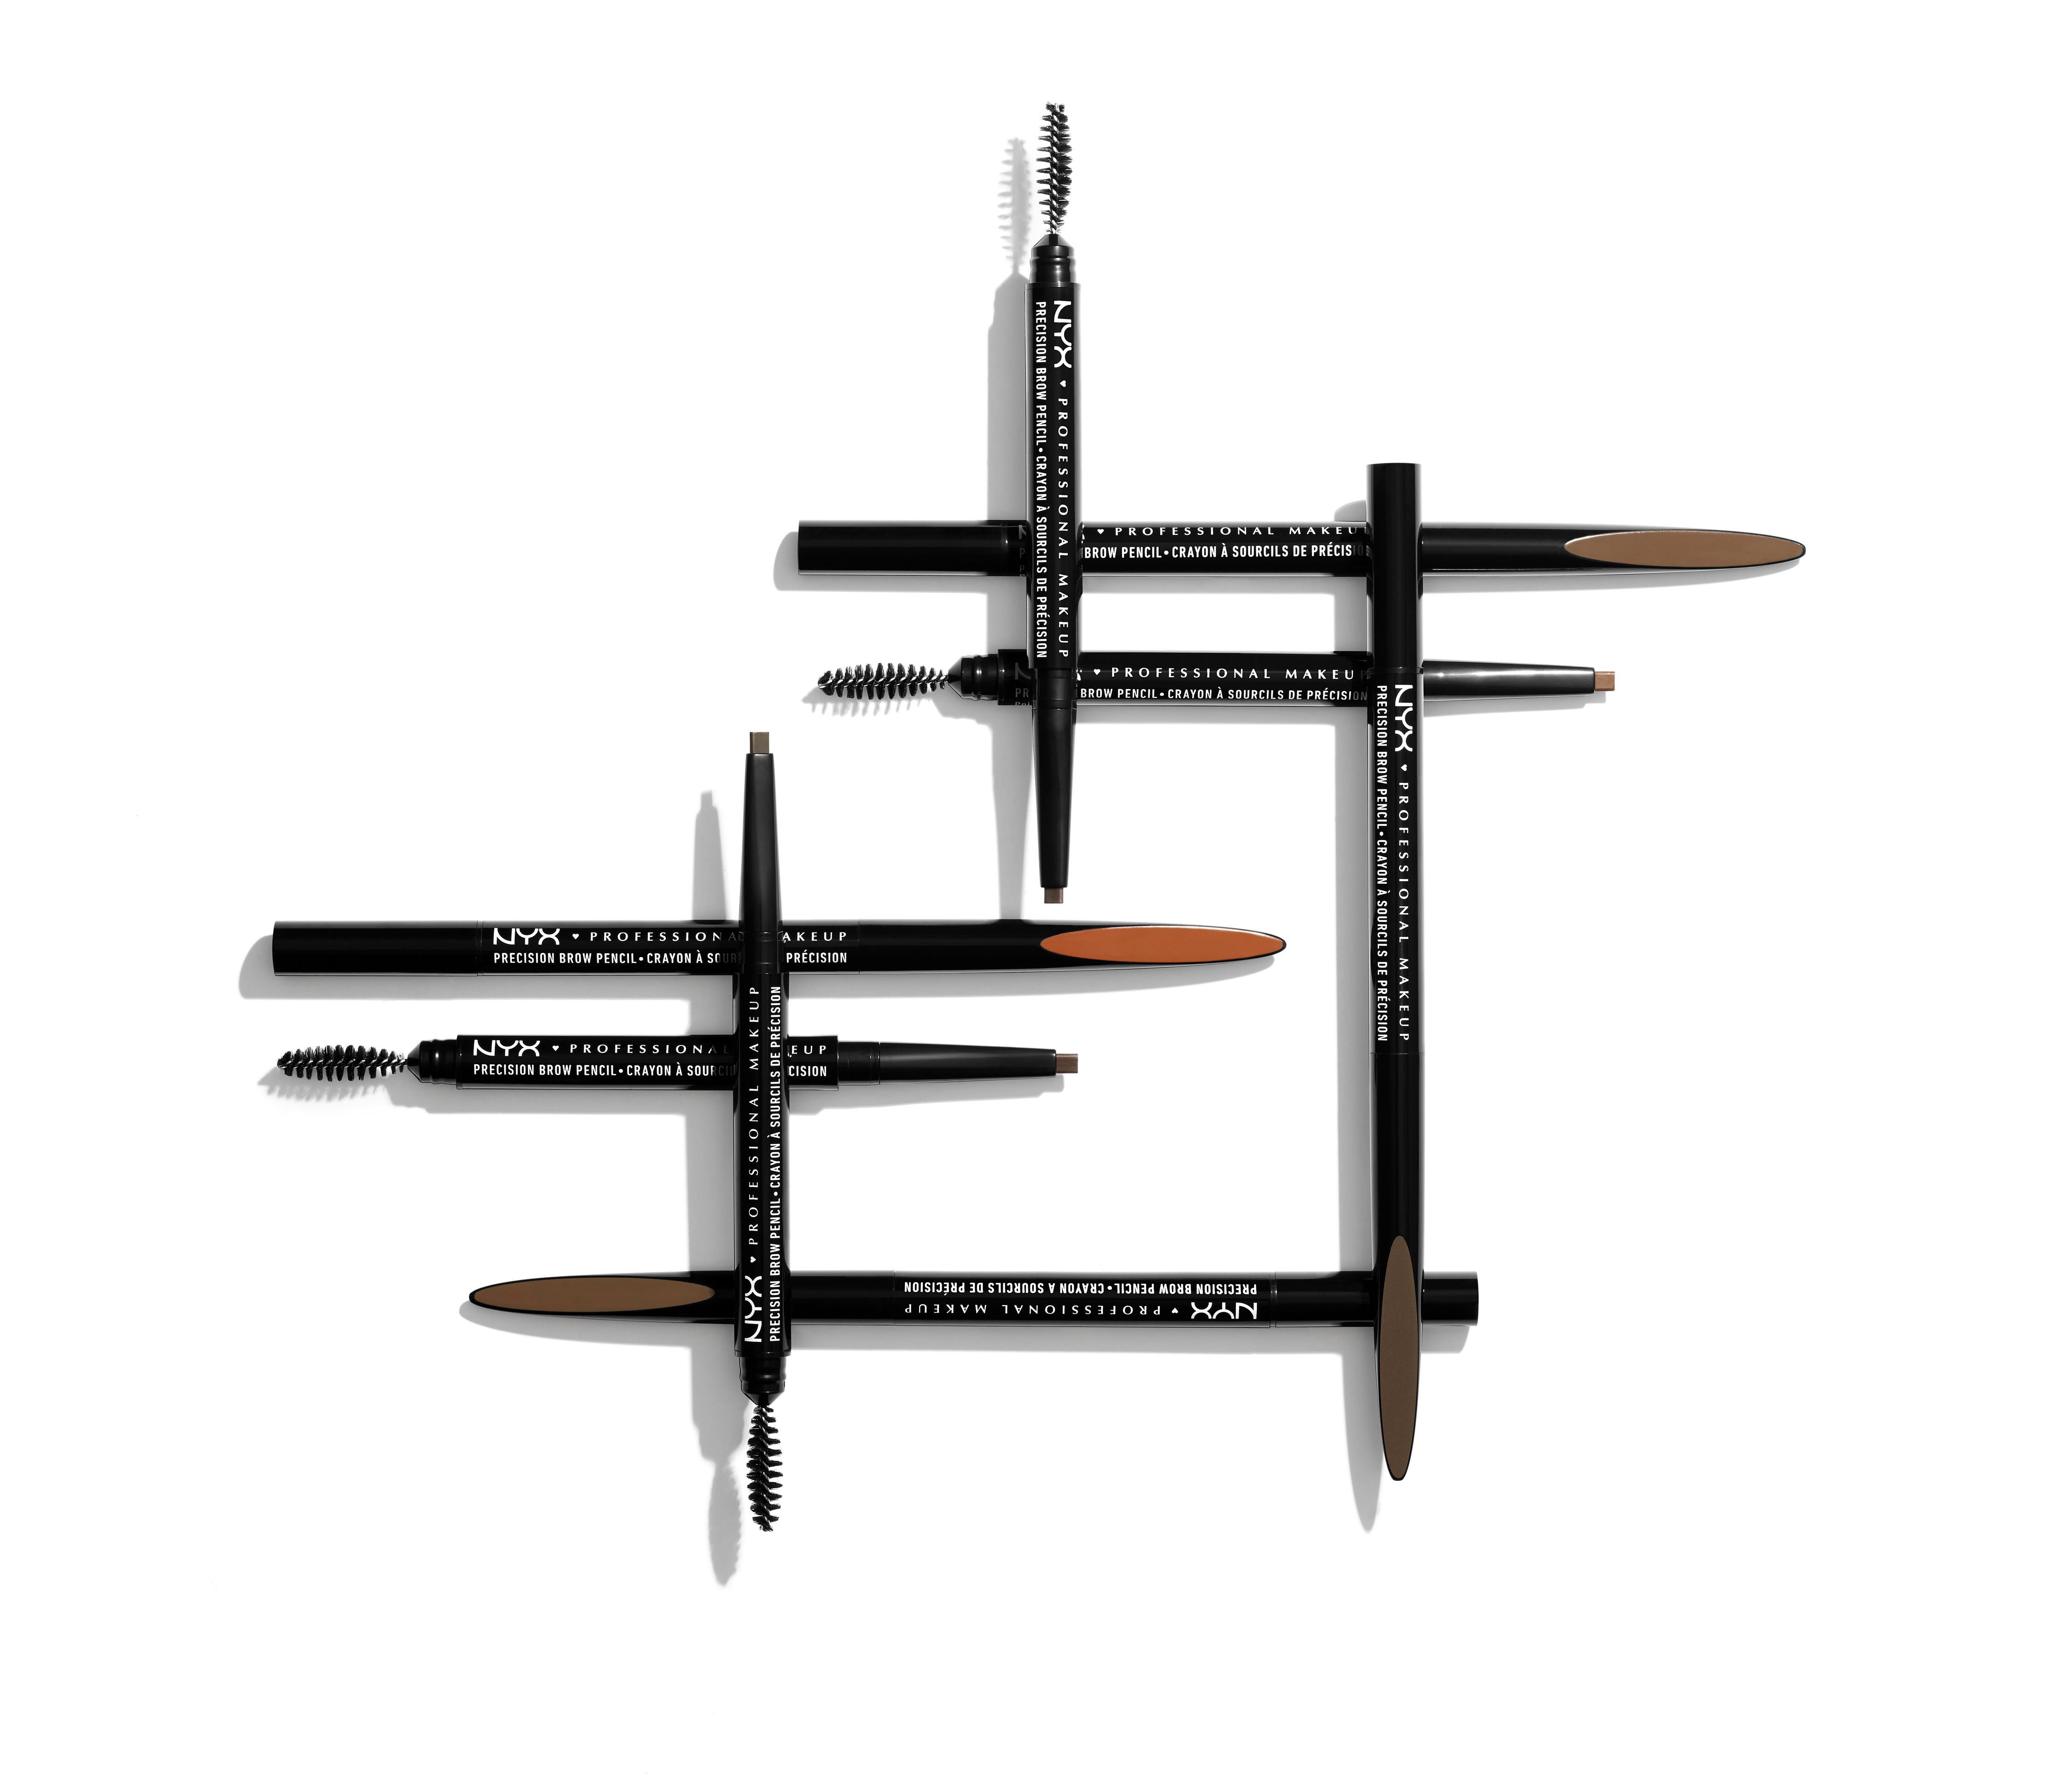 Precision Professional Pencil Makeup espresso NYX Brow Augenbrauen-Stift